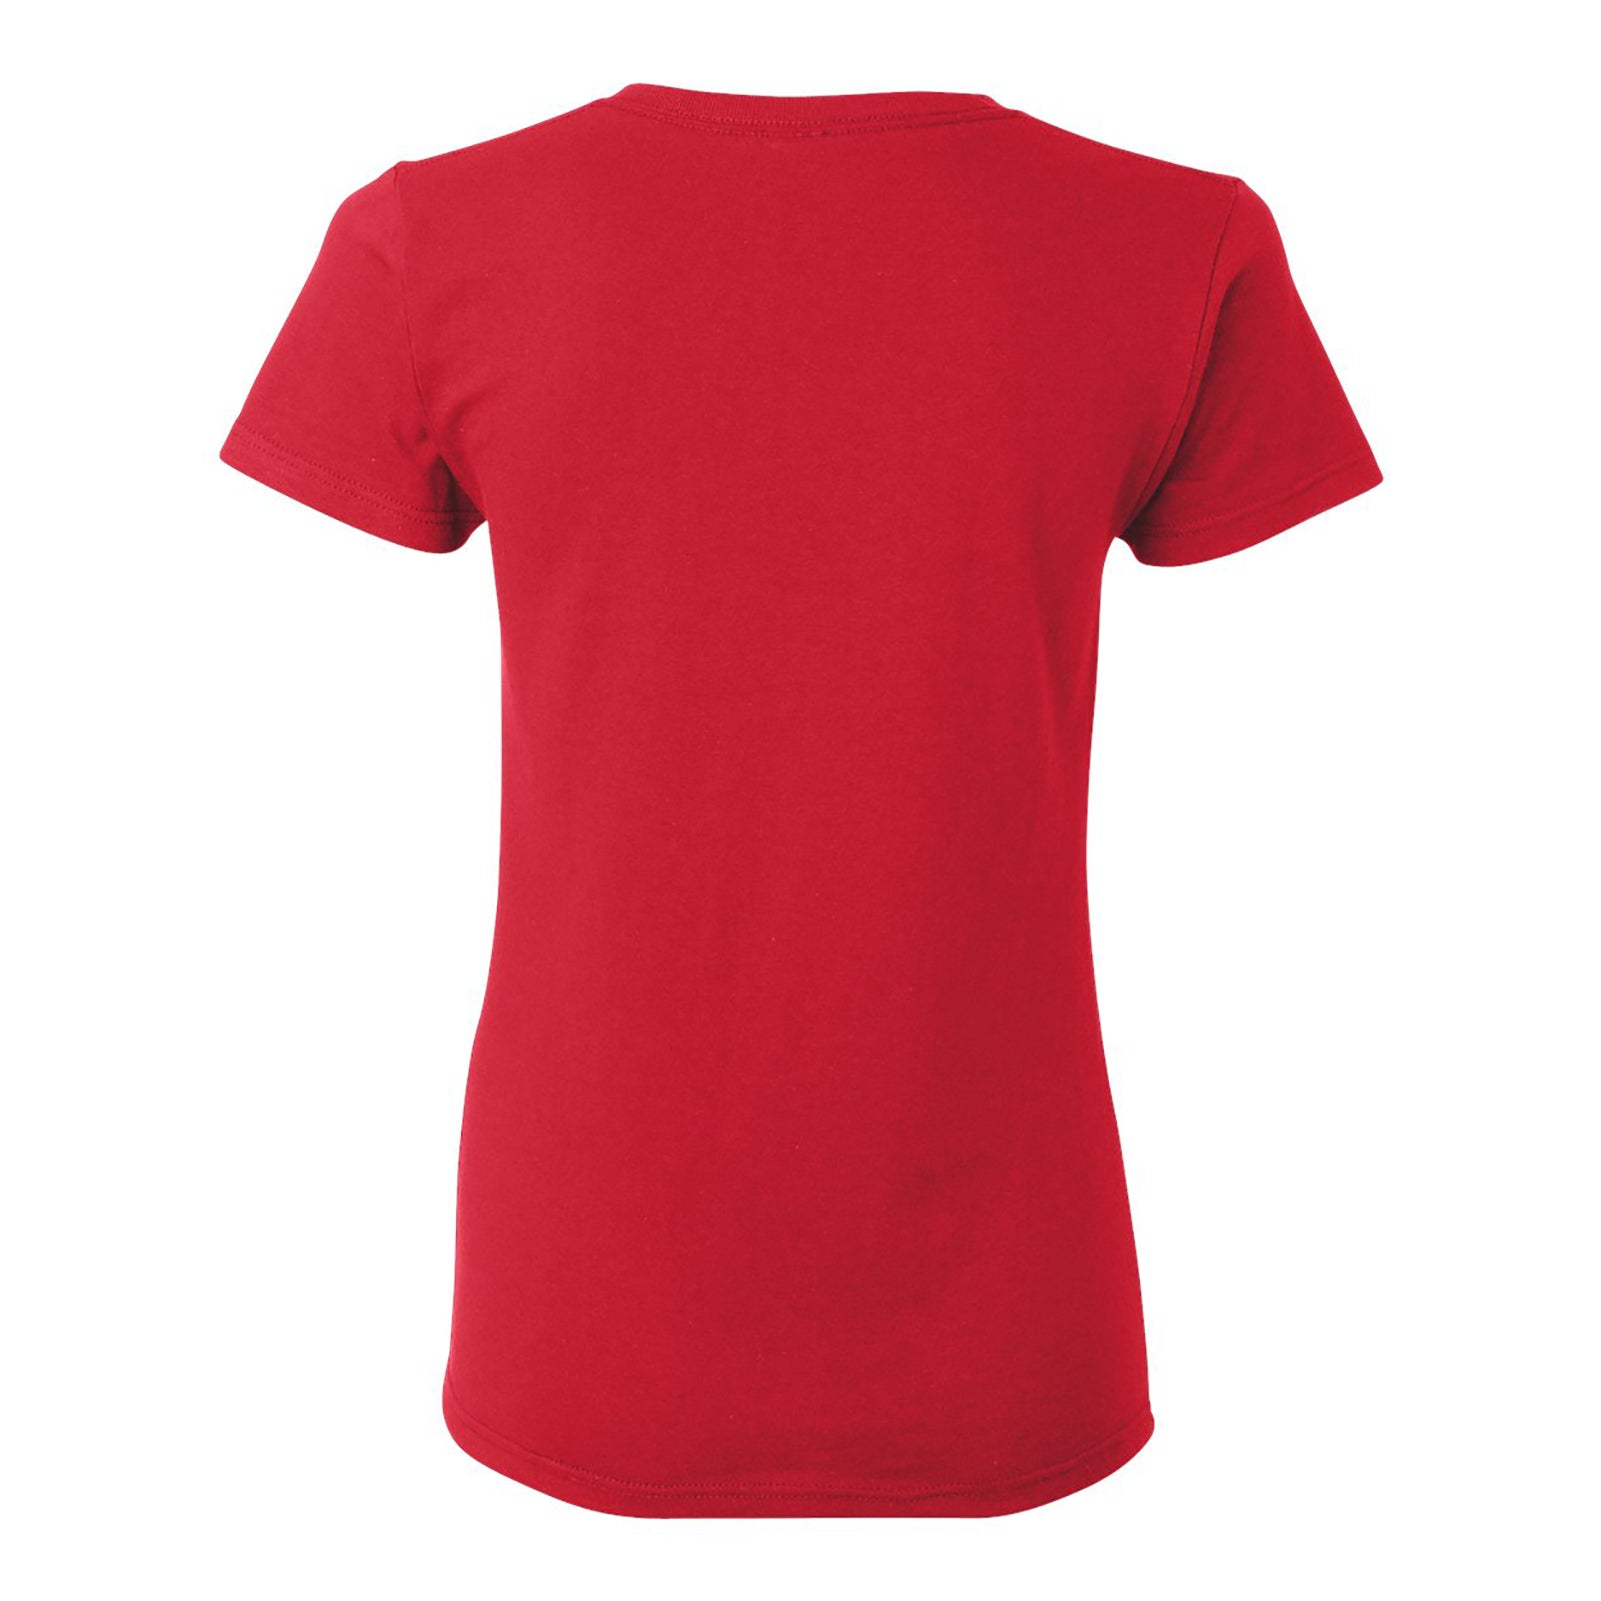 ladies red shirt